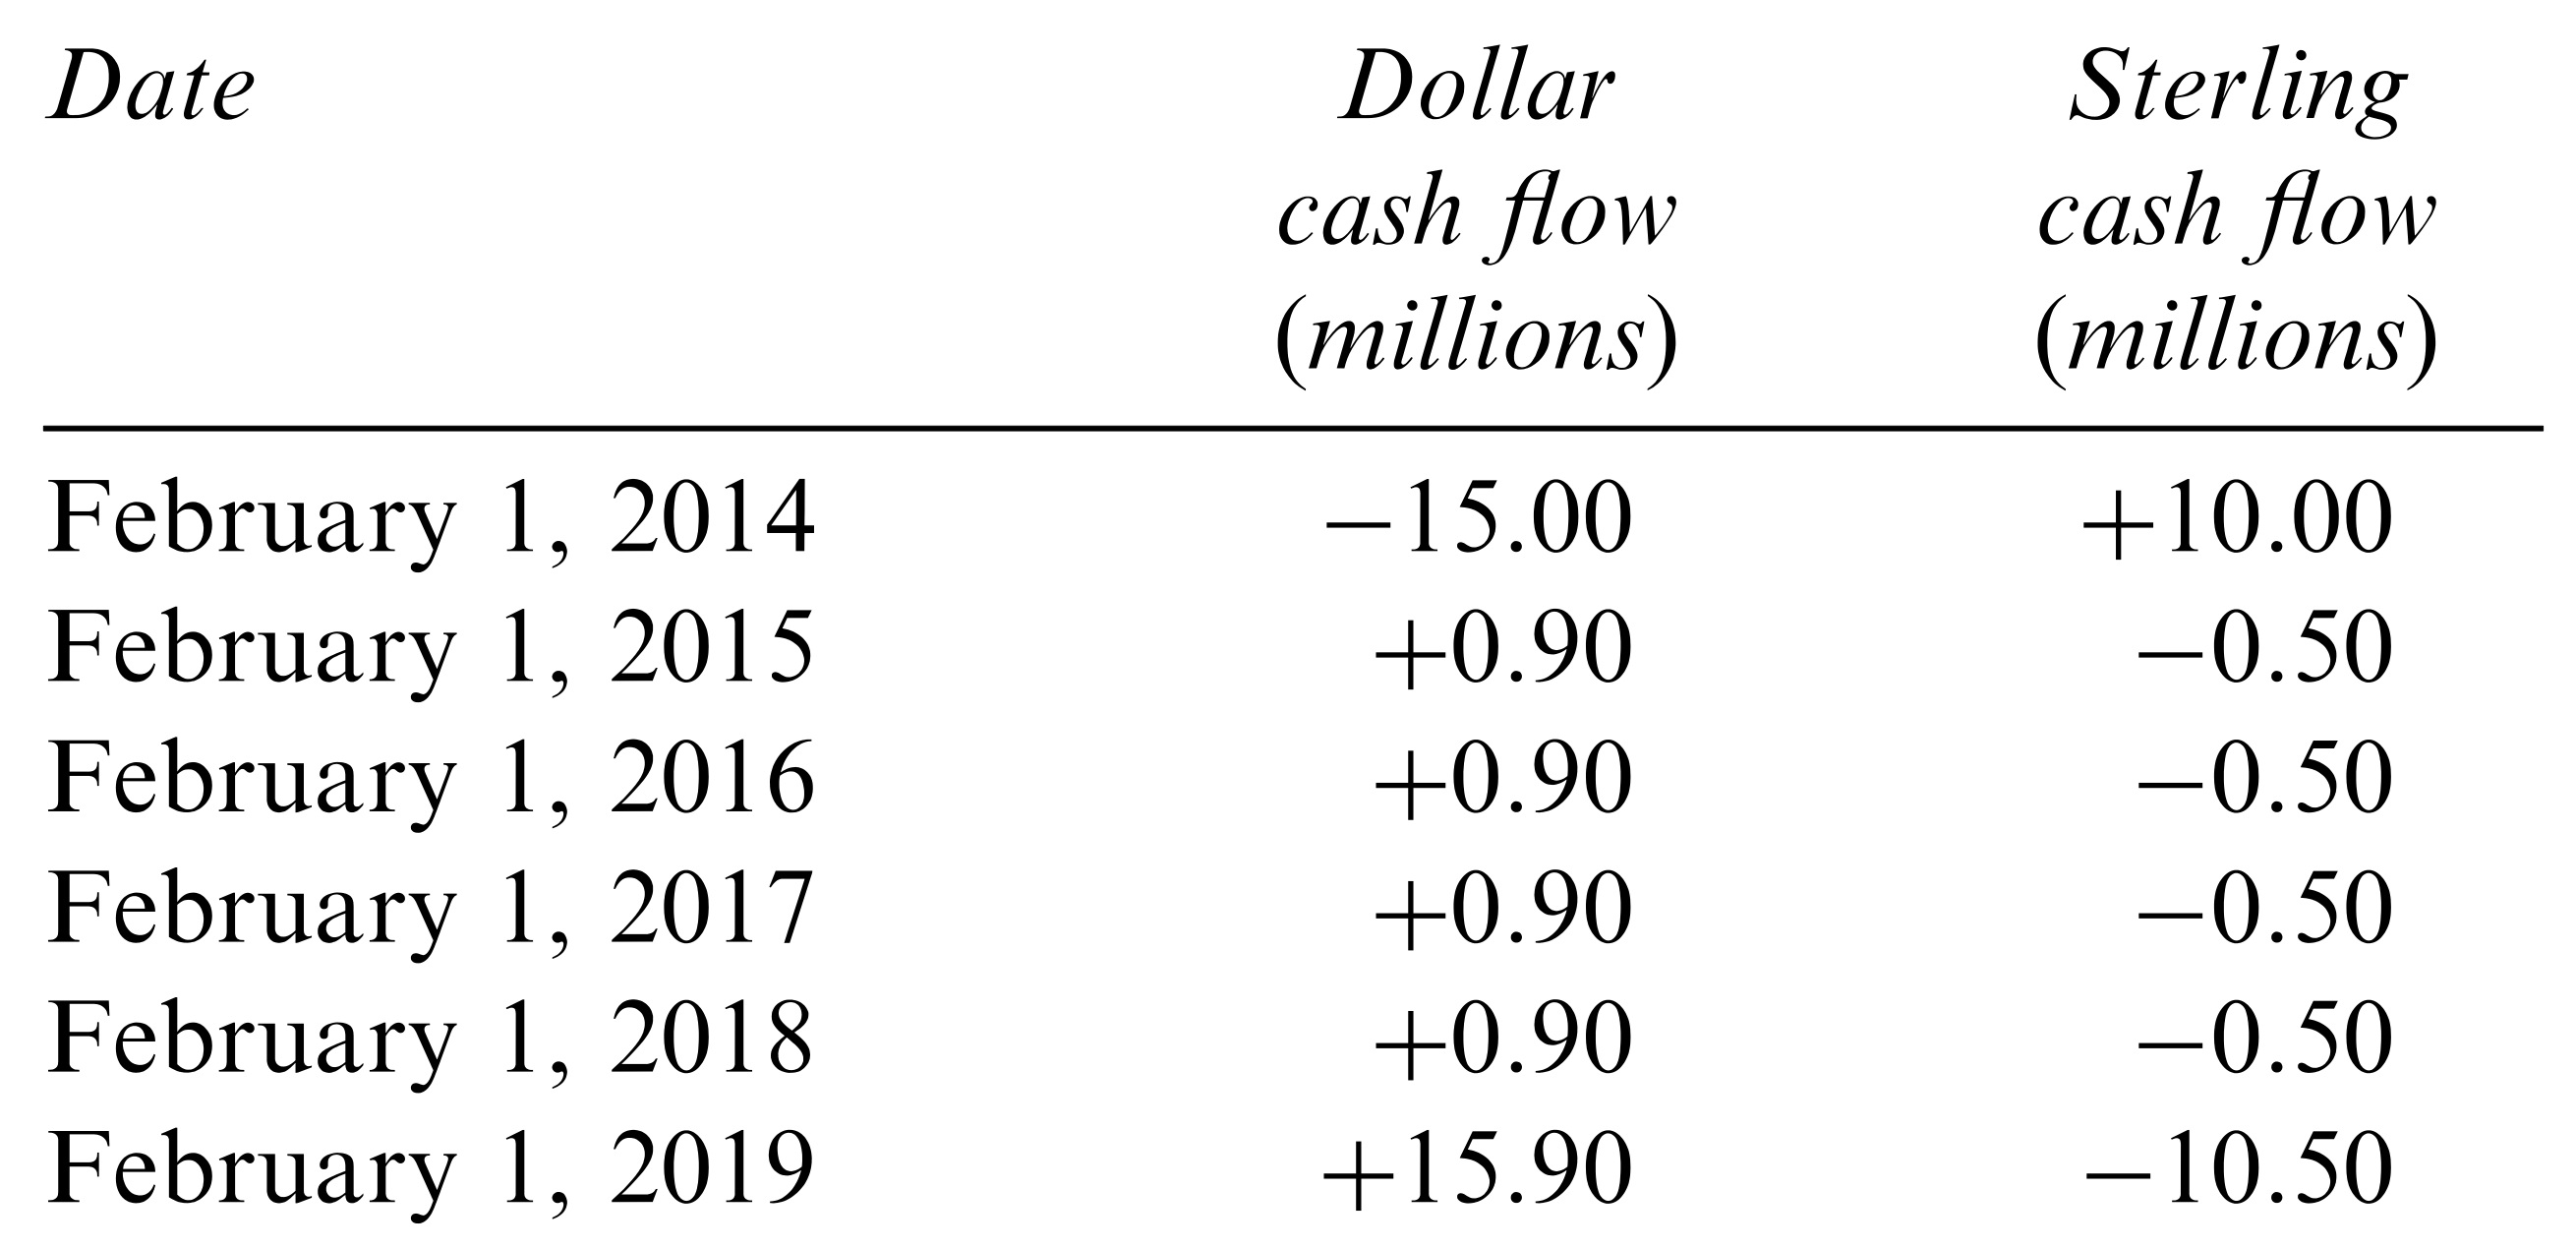 cash_flows